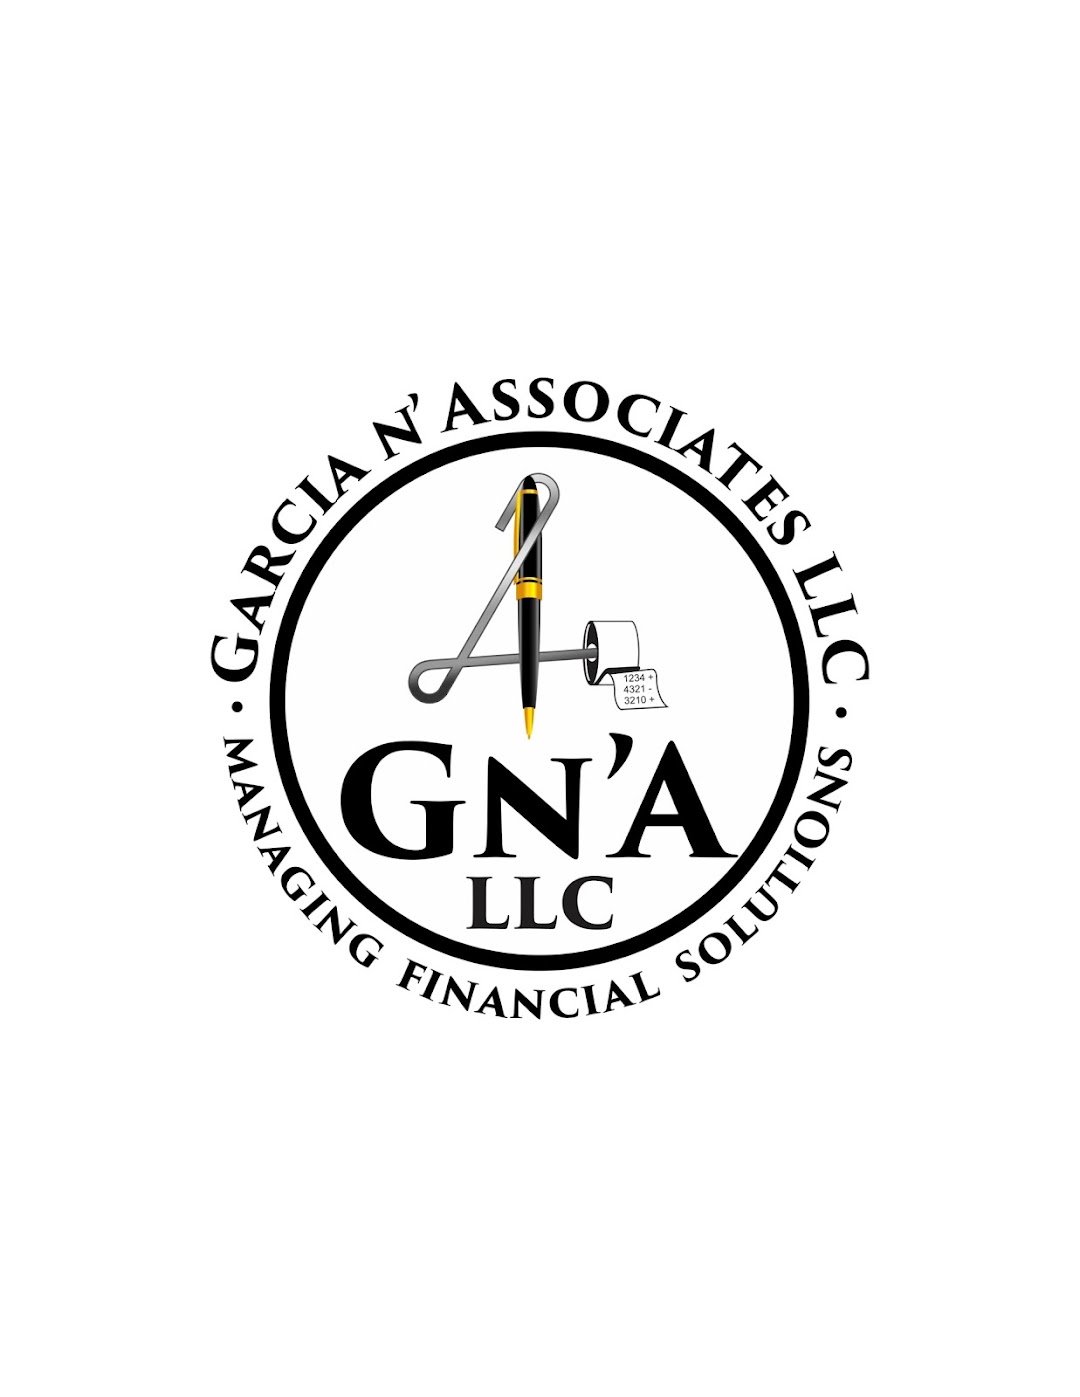 Garcia N Associates, LLC